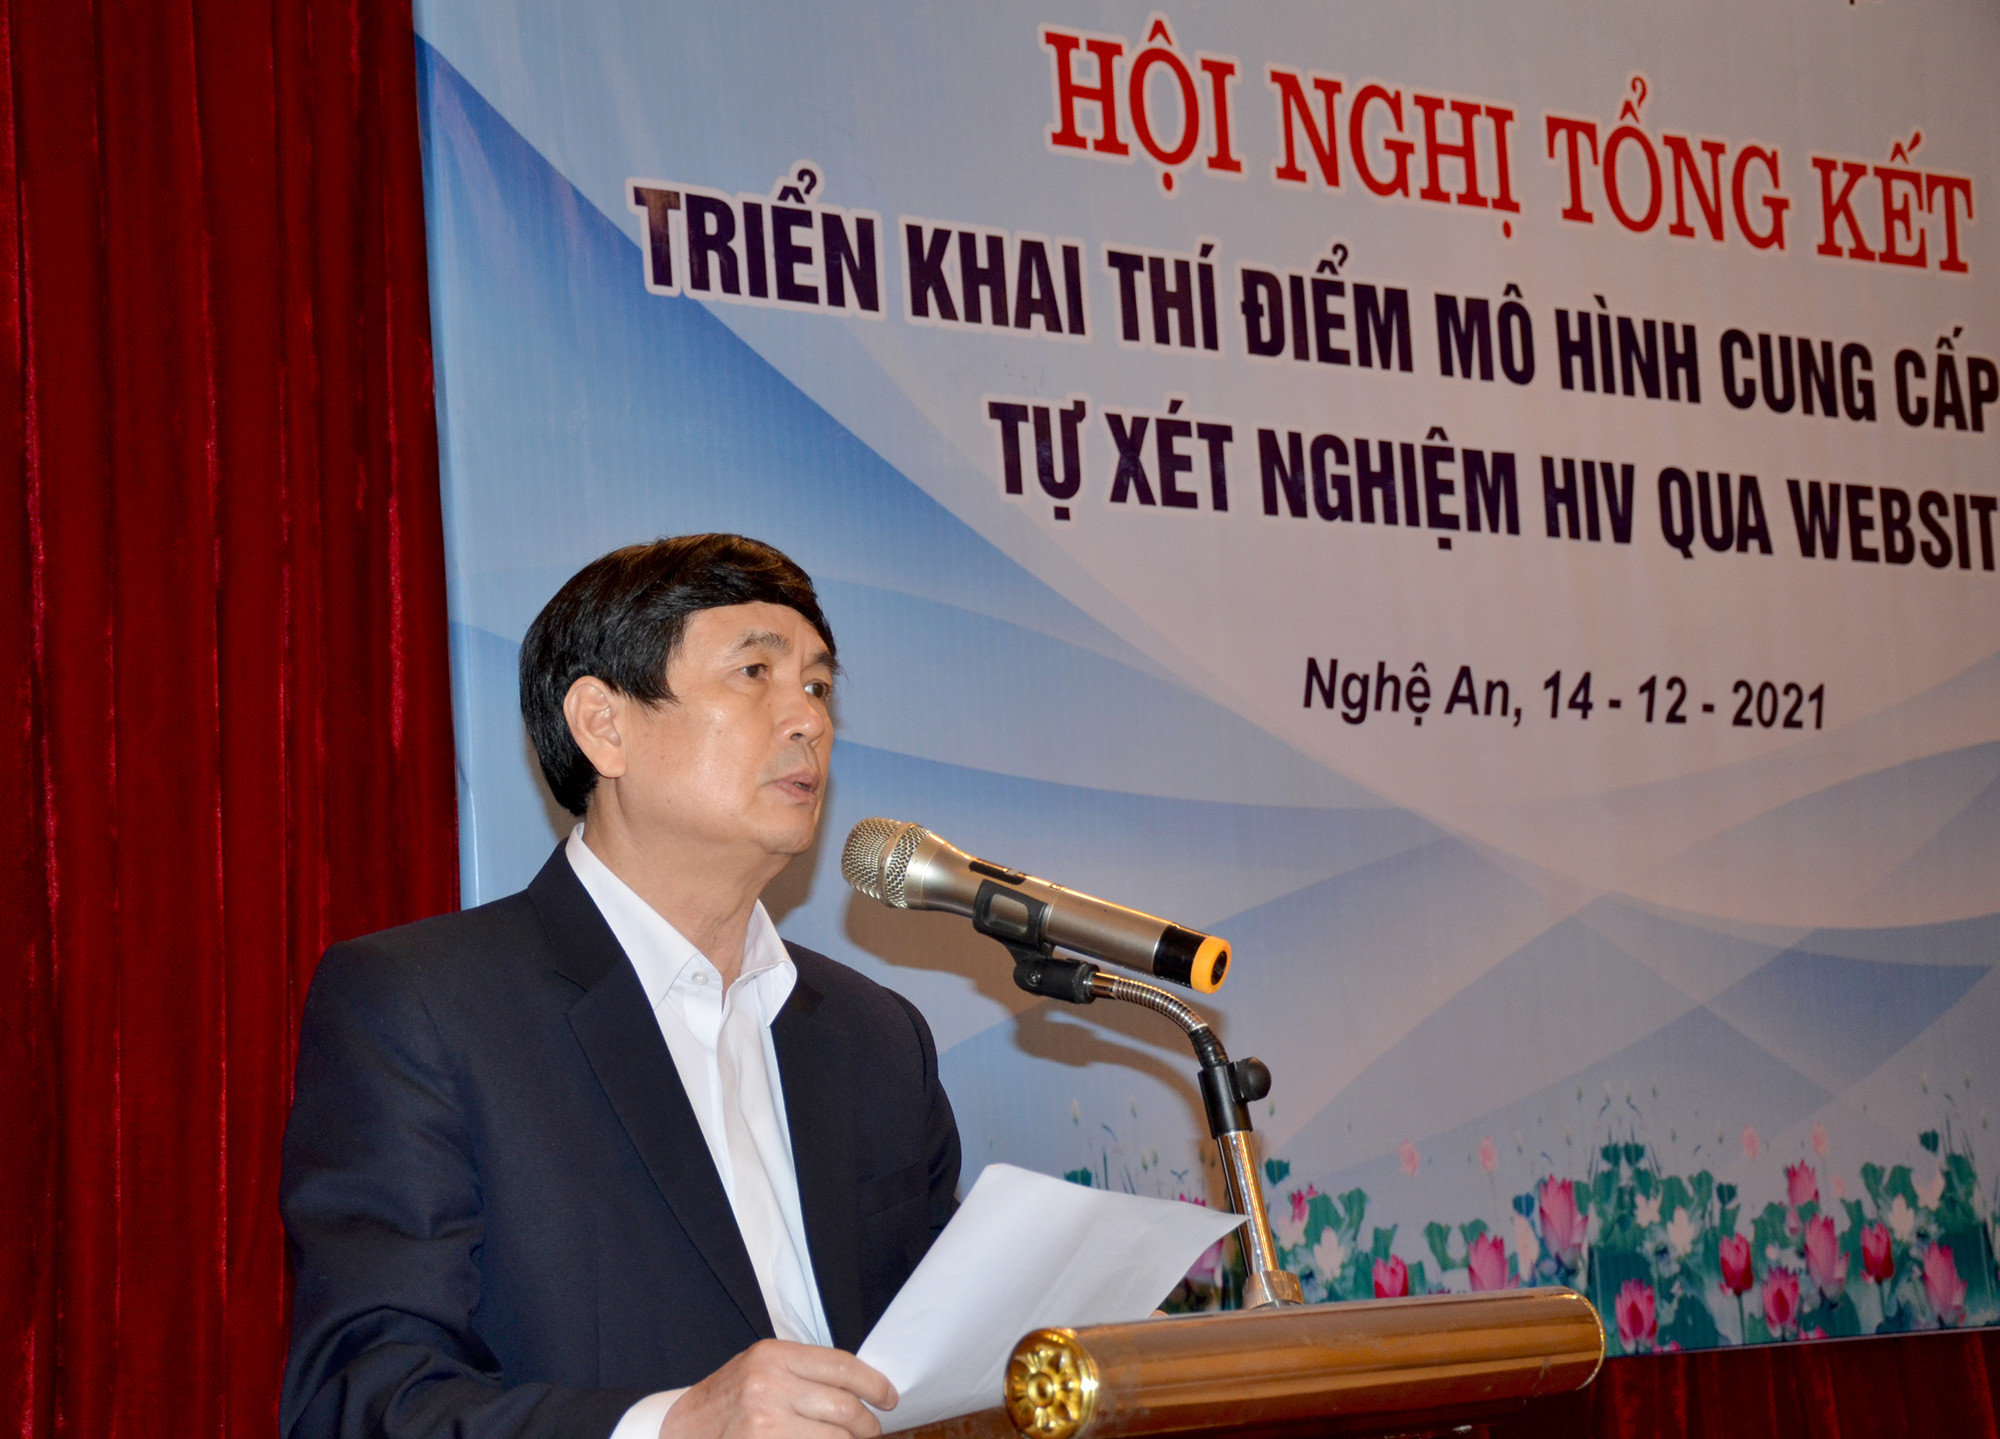 Tiến sĩ Nguyễn Văn Định - Giám đốc Trung tâm Kiểm soát Bệnh tật Nghệ An khai mạc hội nghị. Ảnh: Thành Chung